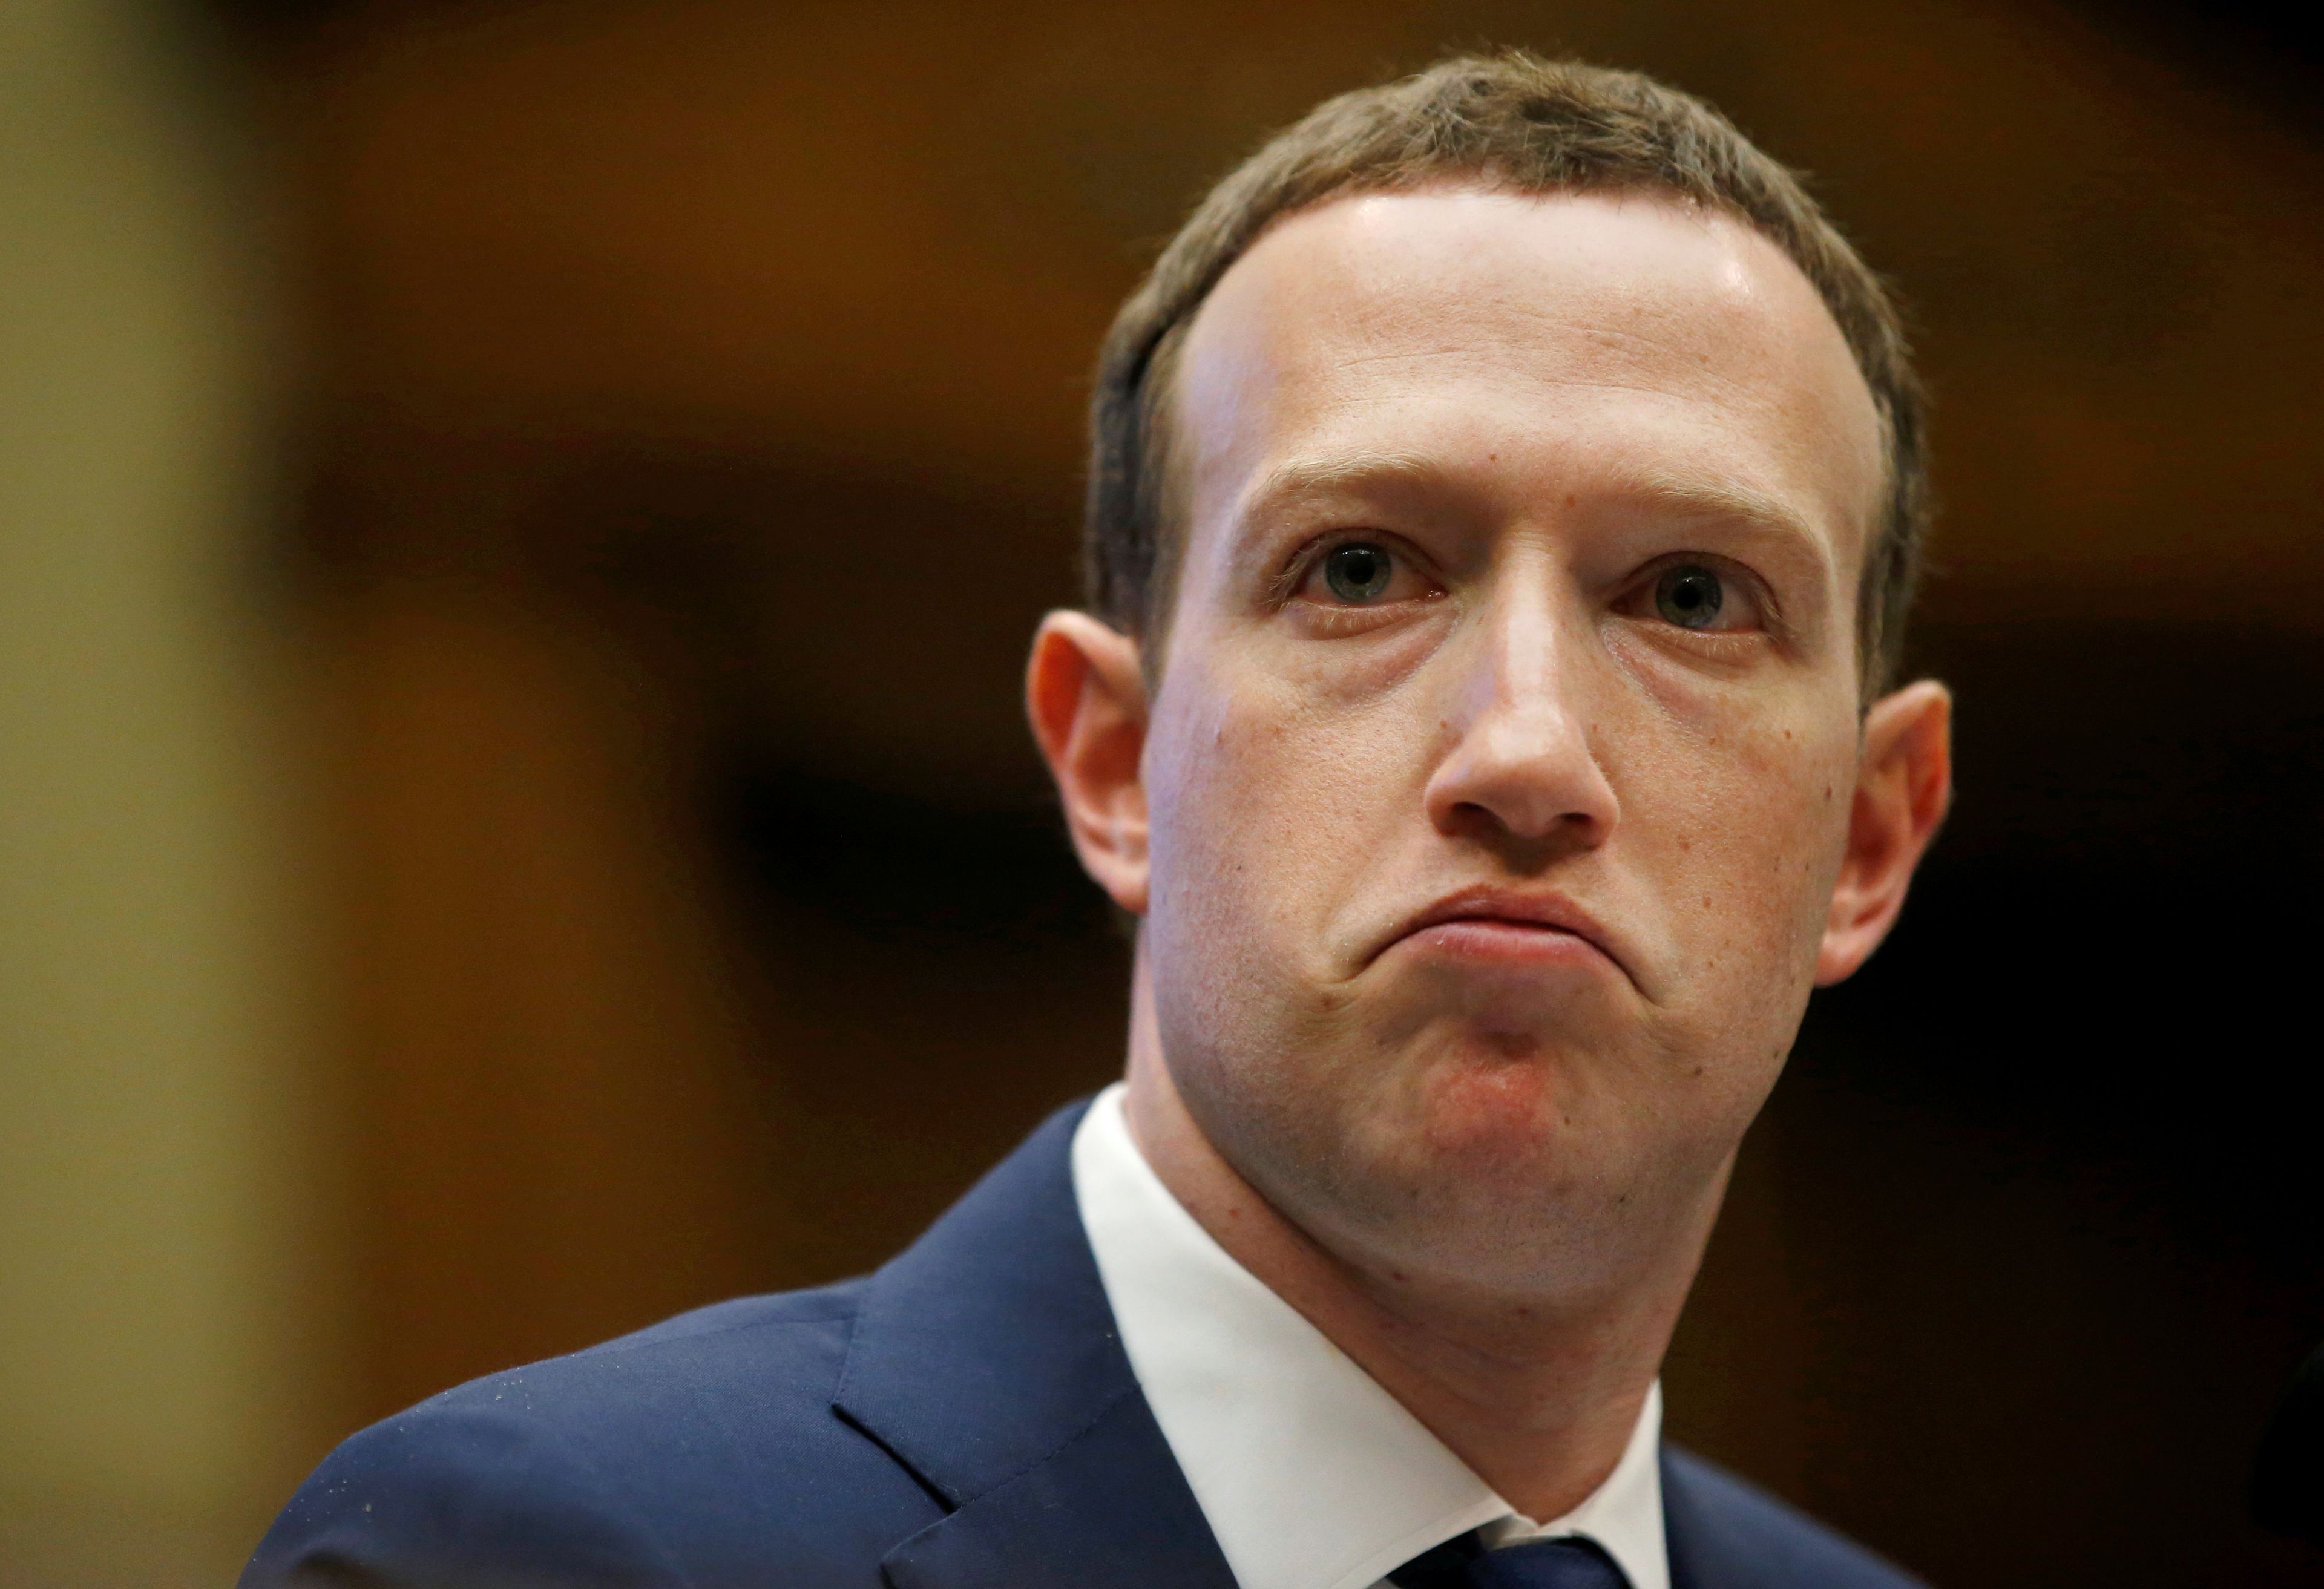 Mark Zuckerberg, CEO de Meta (antes Facebook), en una imagen de archivo